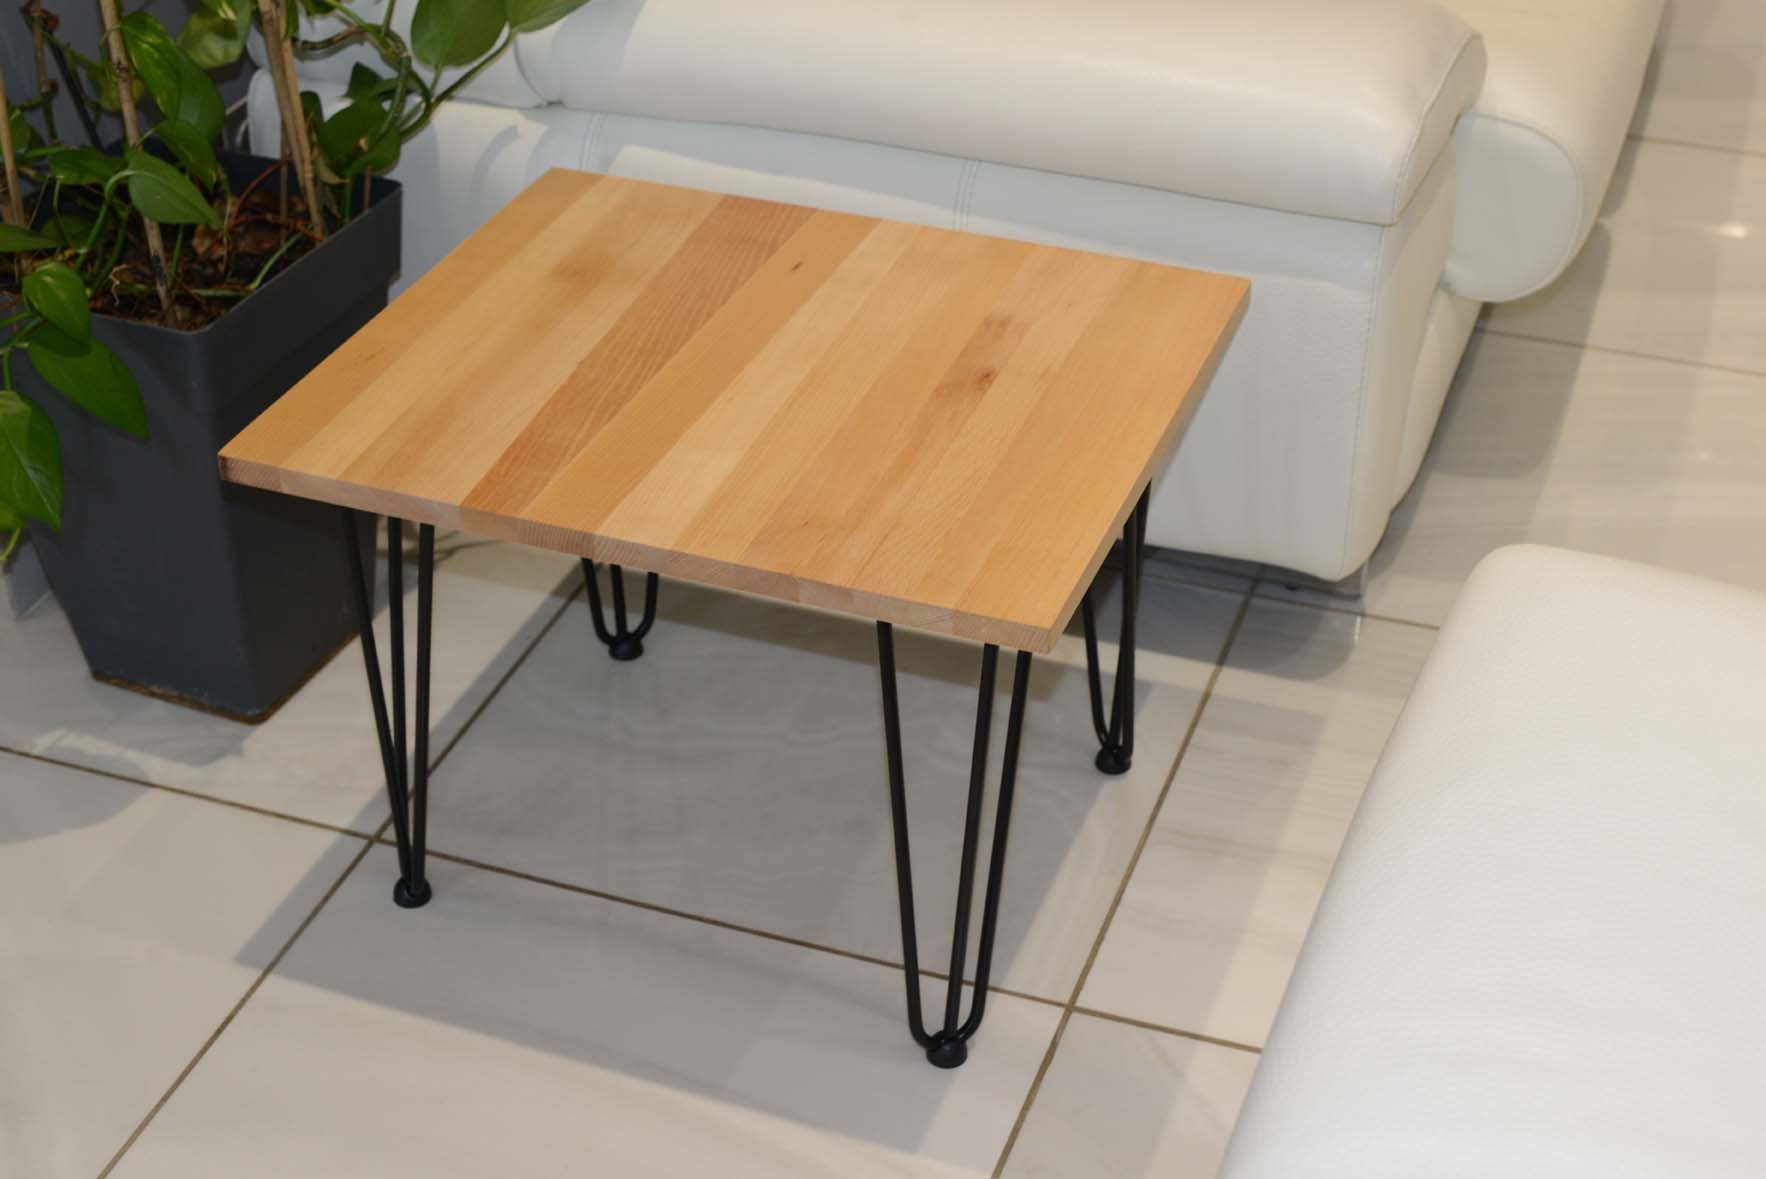 Petite table basse pieds en épingle et bois massif pour salon